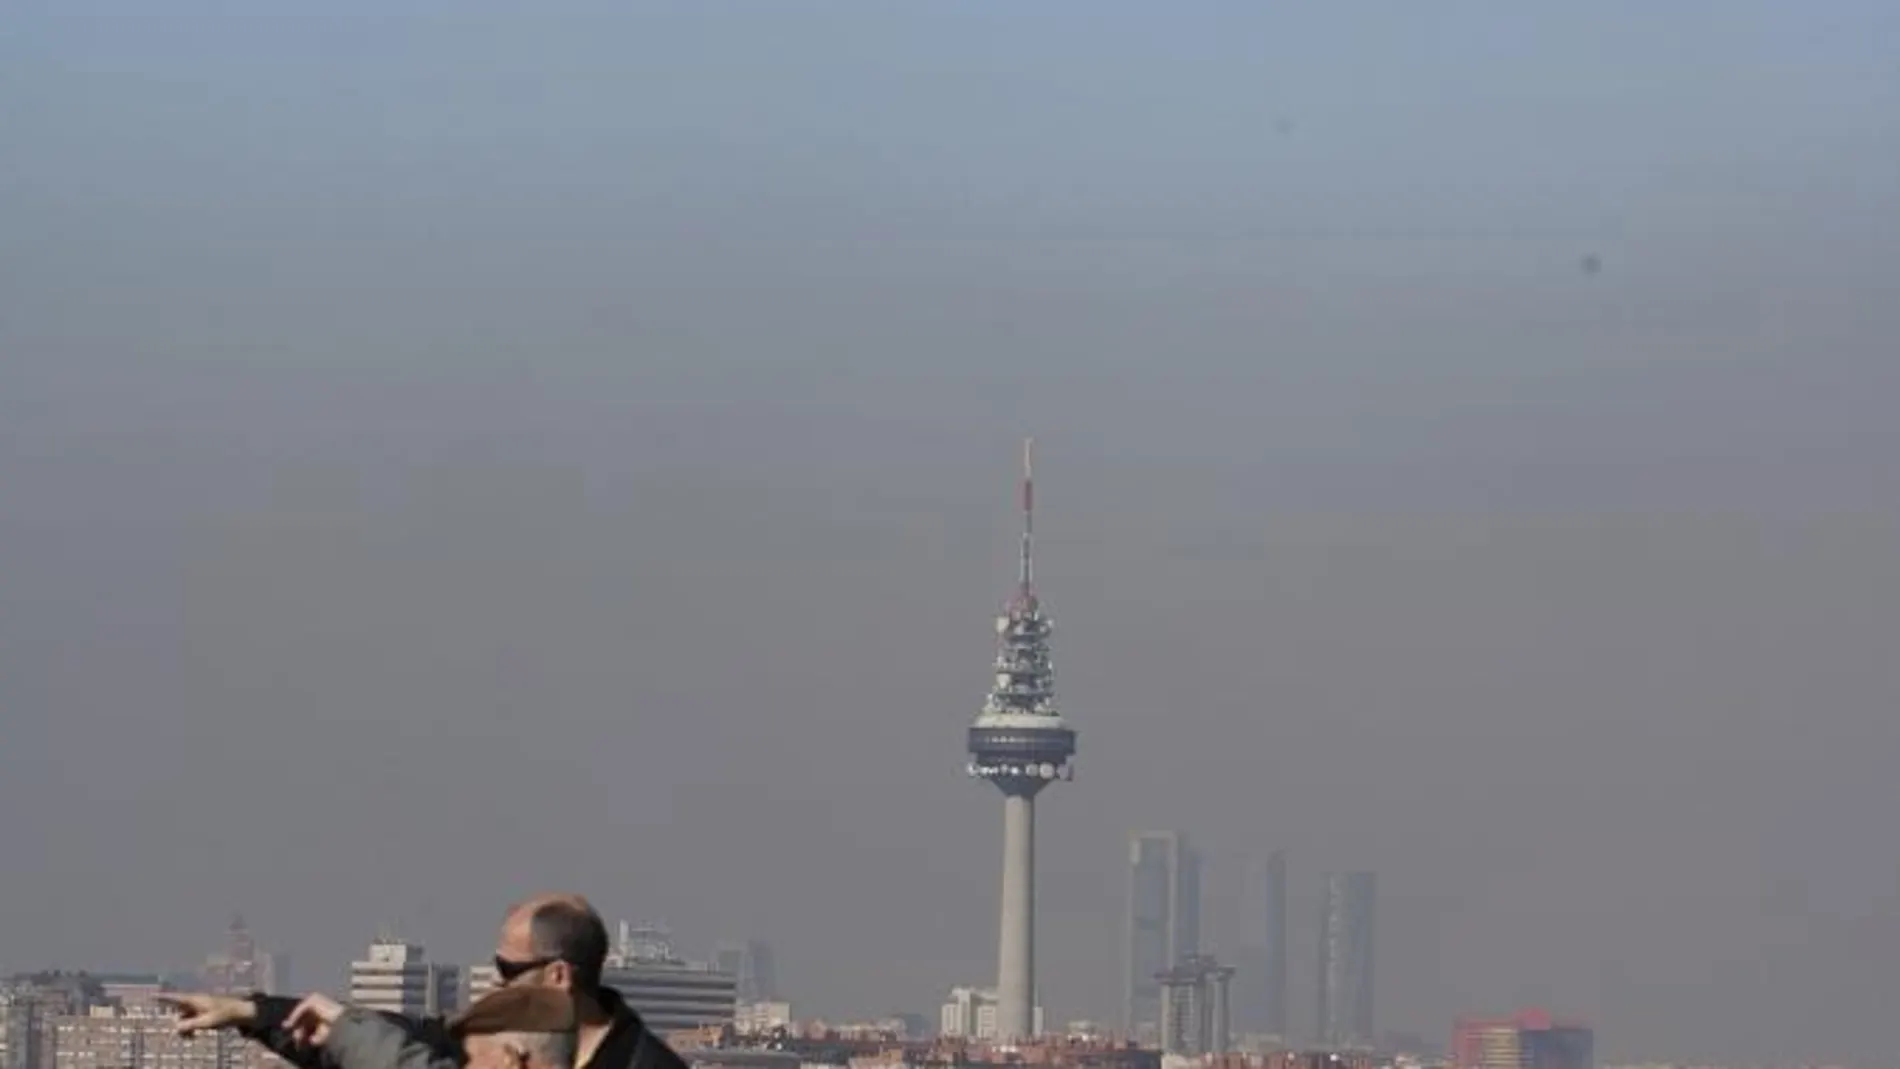 La "boina"de contaminación sobre Madrid, en una imagen de 2011